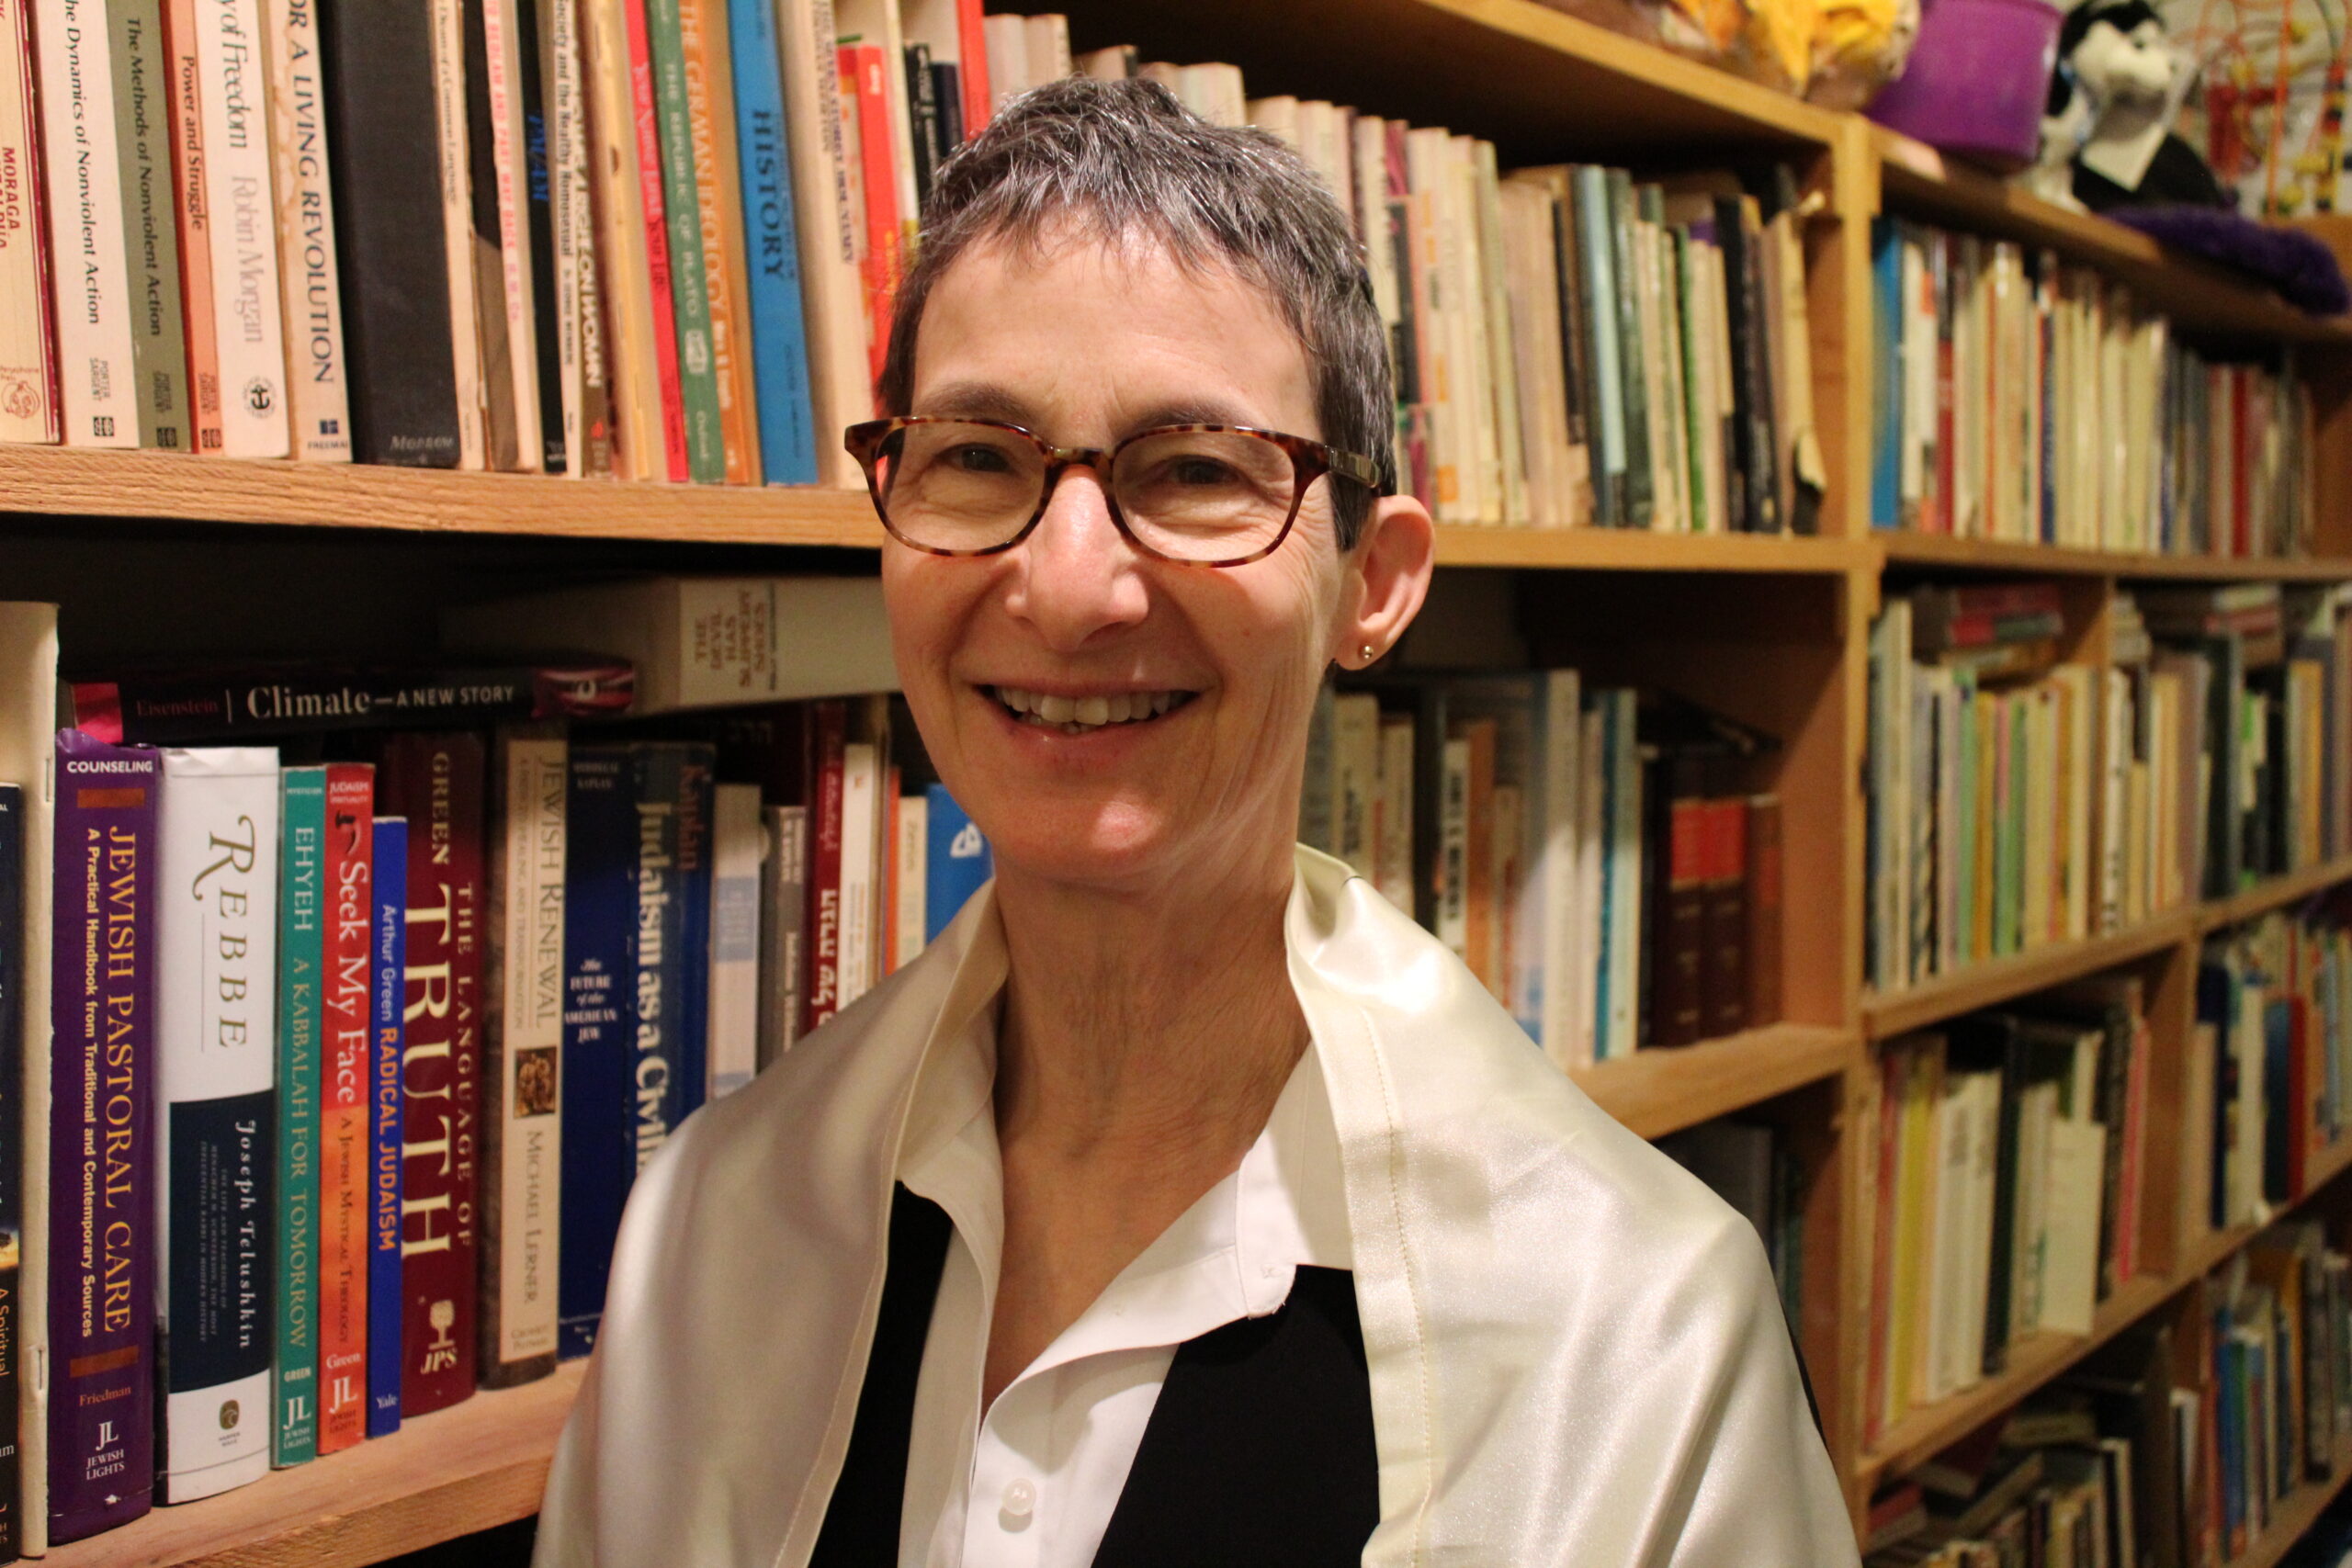 Rabbi Julie Greenberg